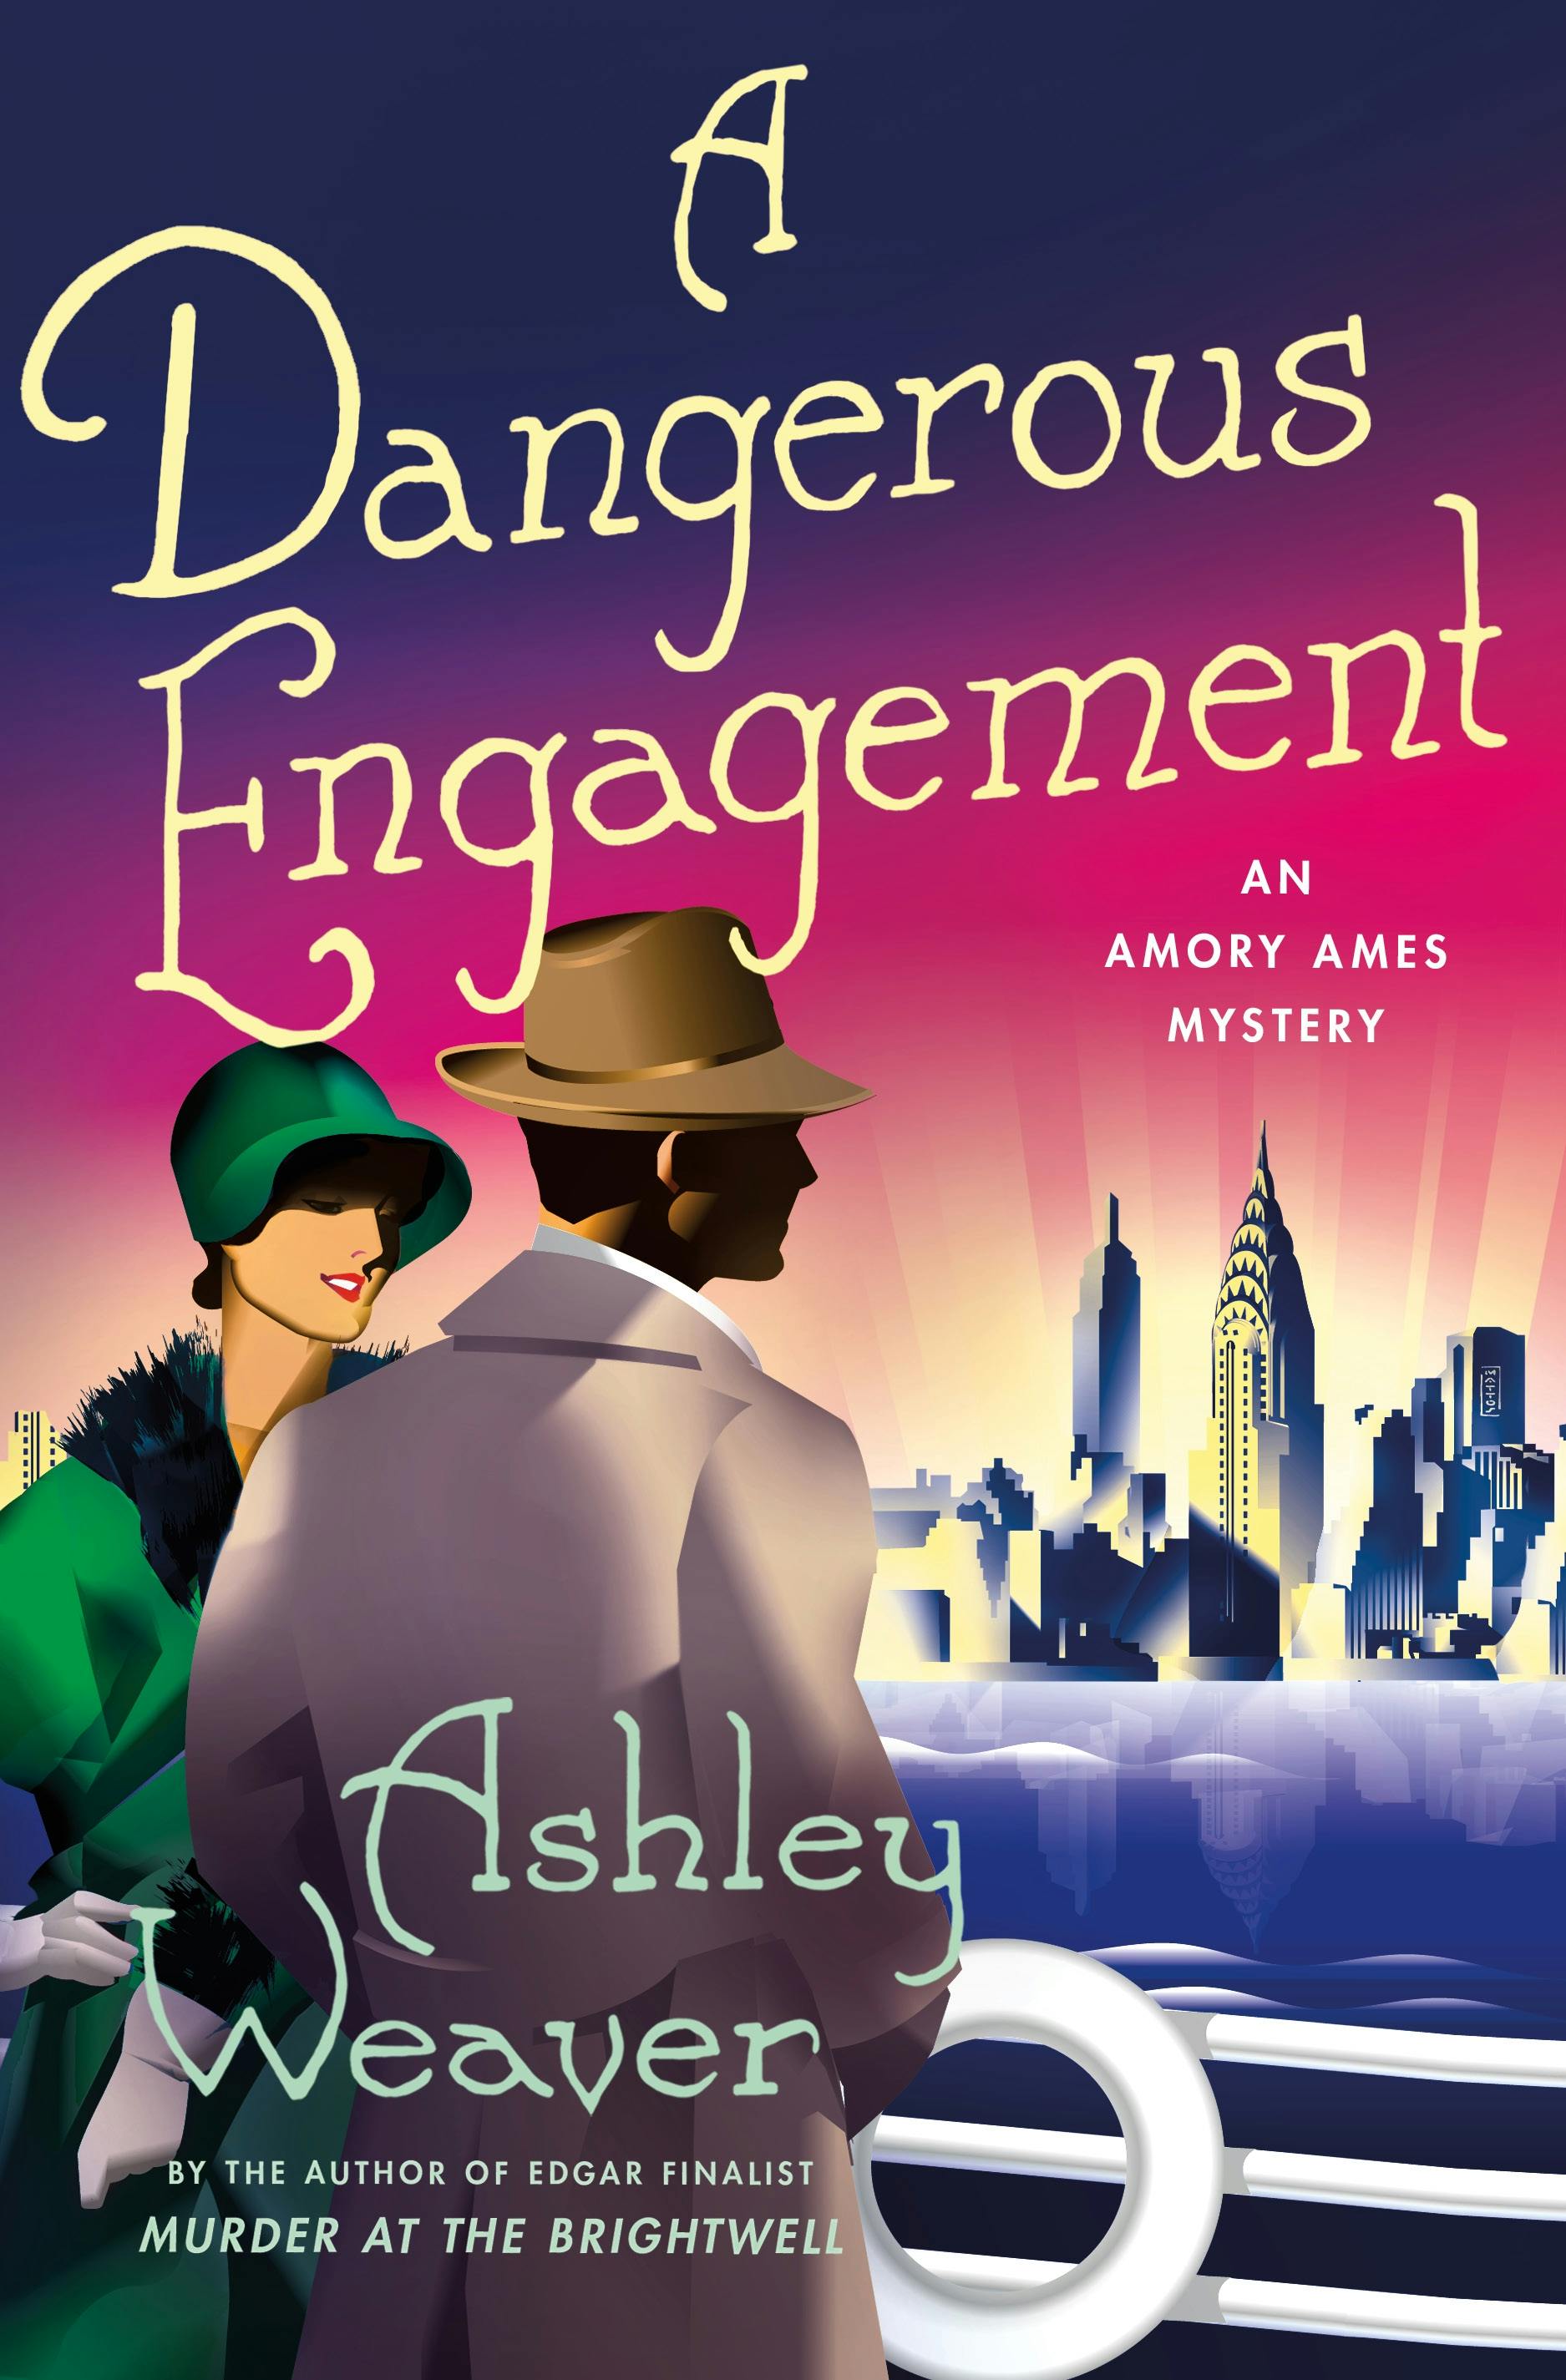 Dangerous Engagement